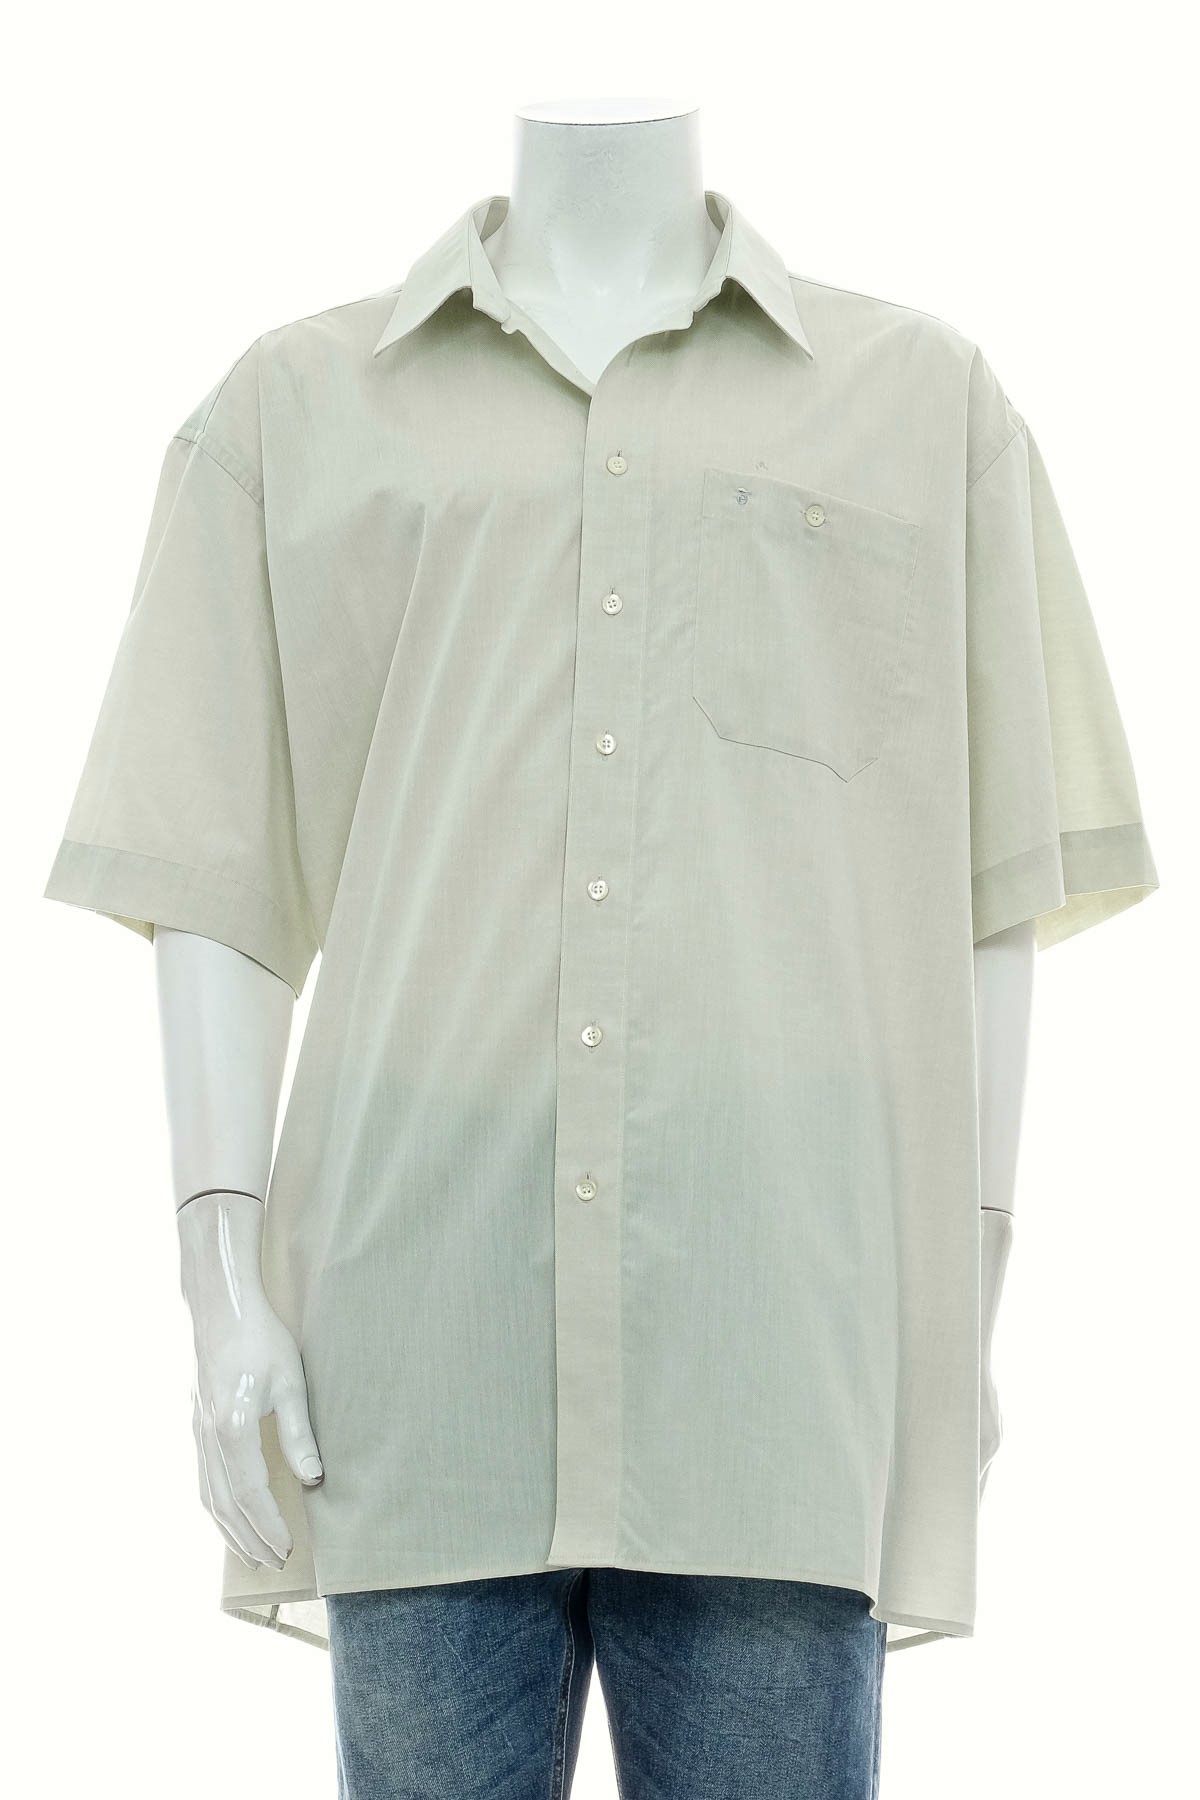 Ανδρικό πουκάμισο - Eterna - 0